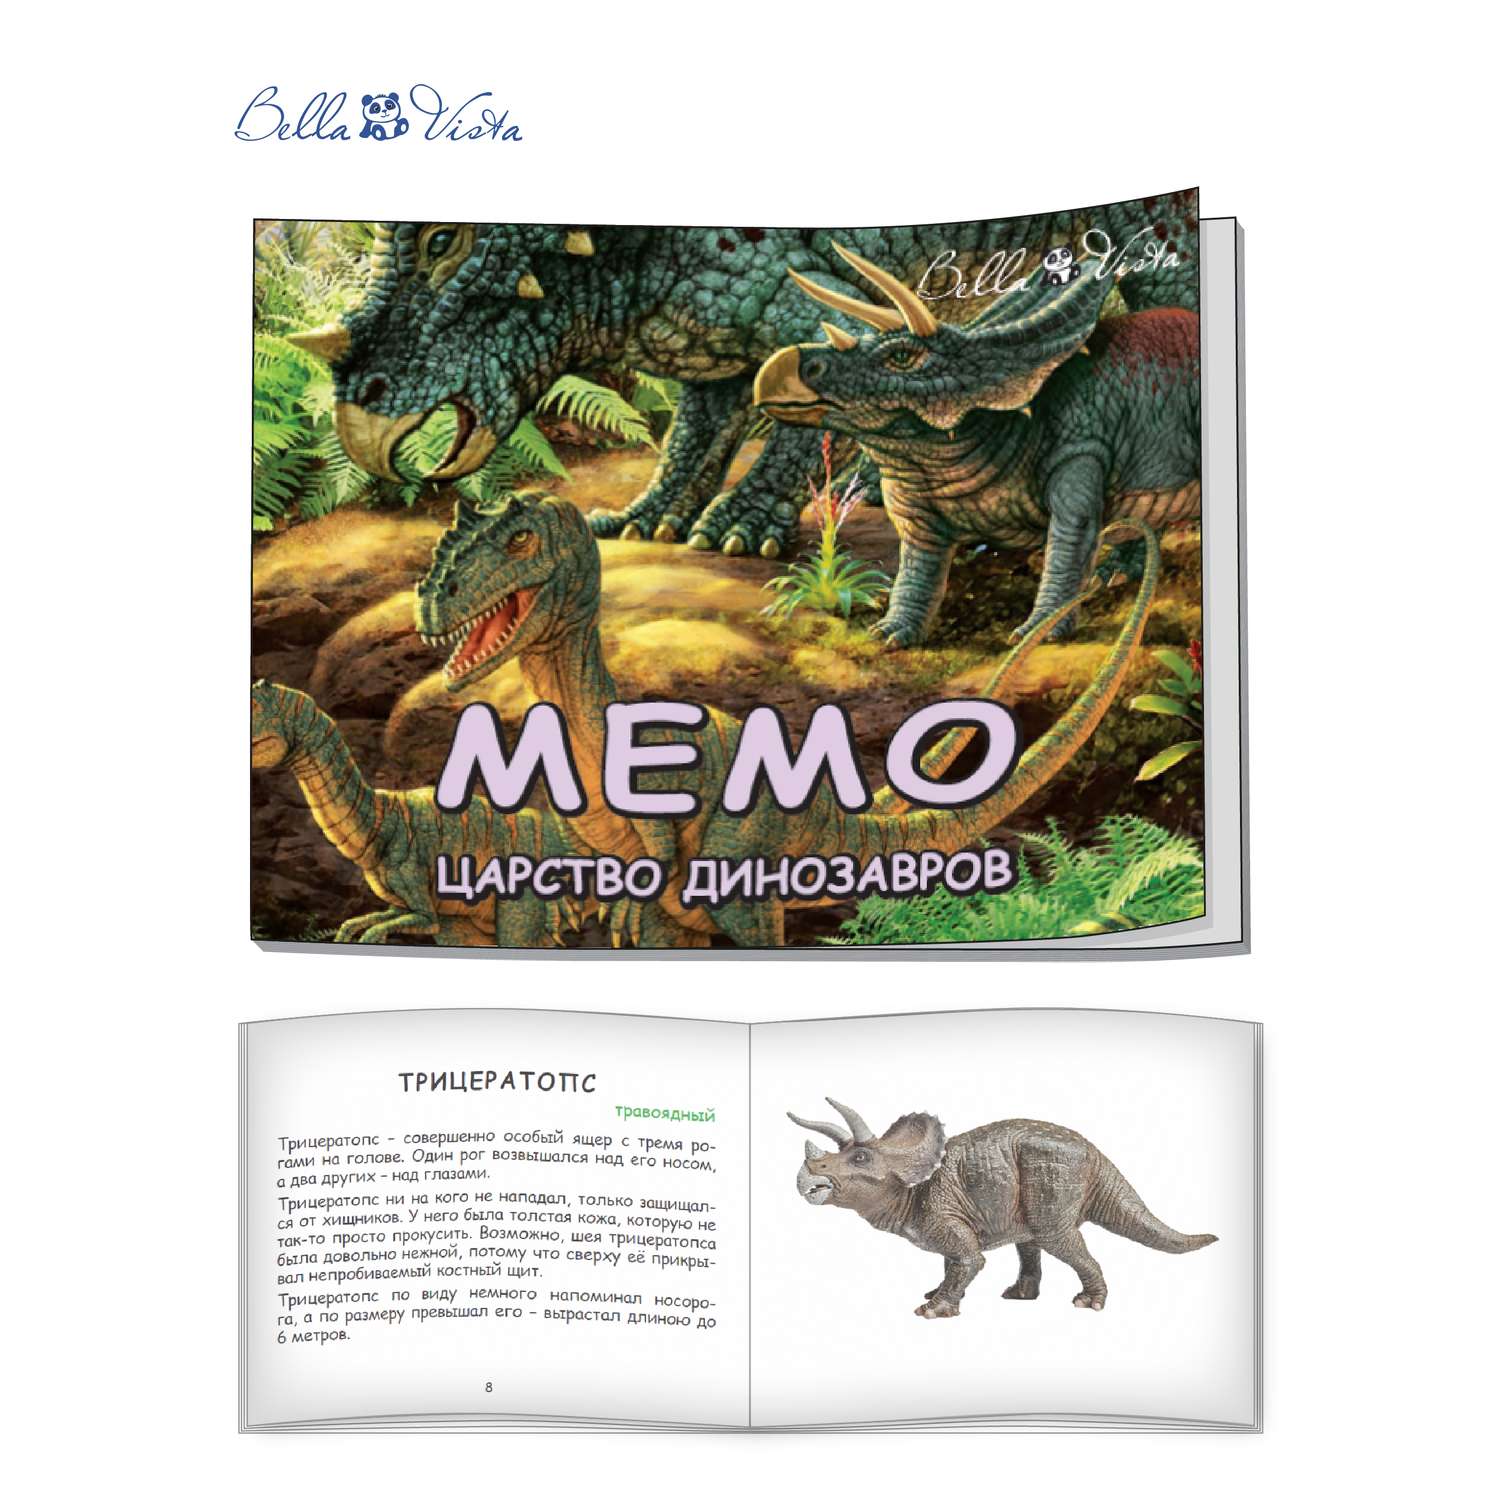 Игра Мемо BELLA VISTA Царство динозавров - фото 21